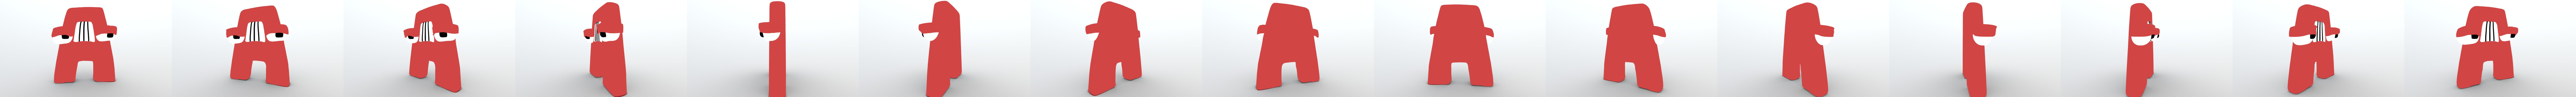 L (Alphabet Lore) - Download Free 3D model by aniandronic (@aniandronic)  [4e4133e]